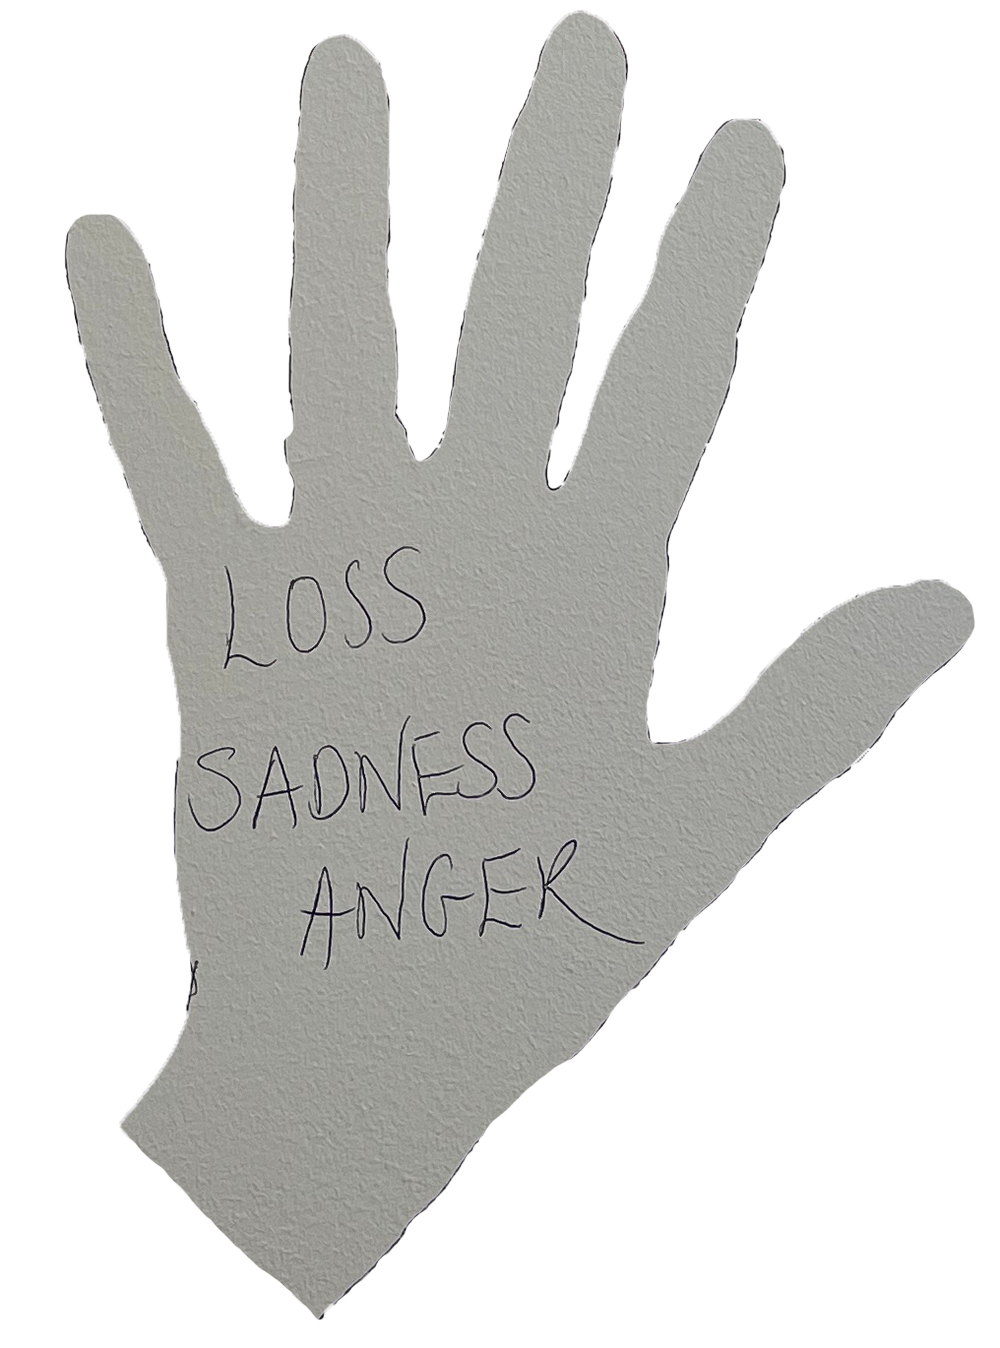 Loss, sadness, anger.png